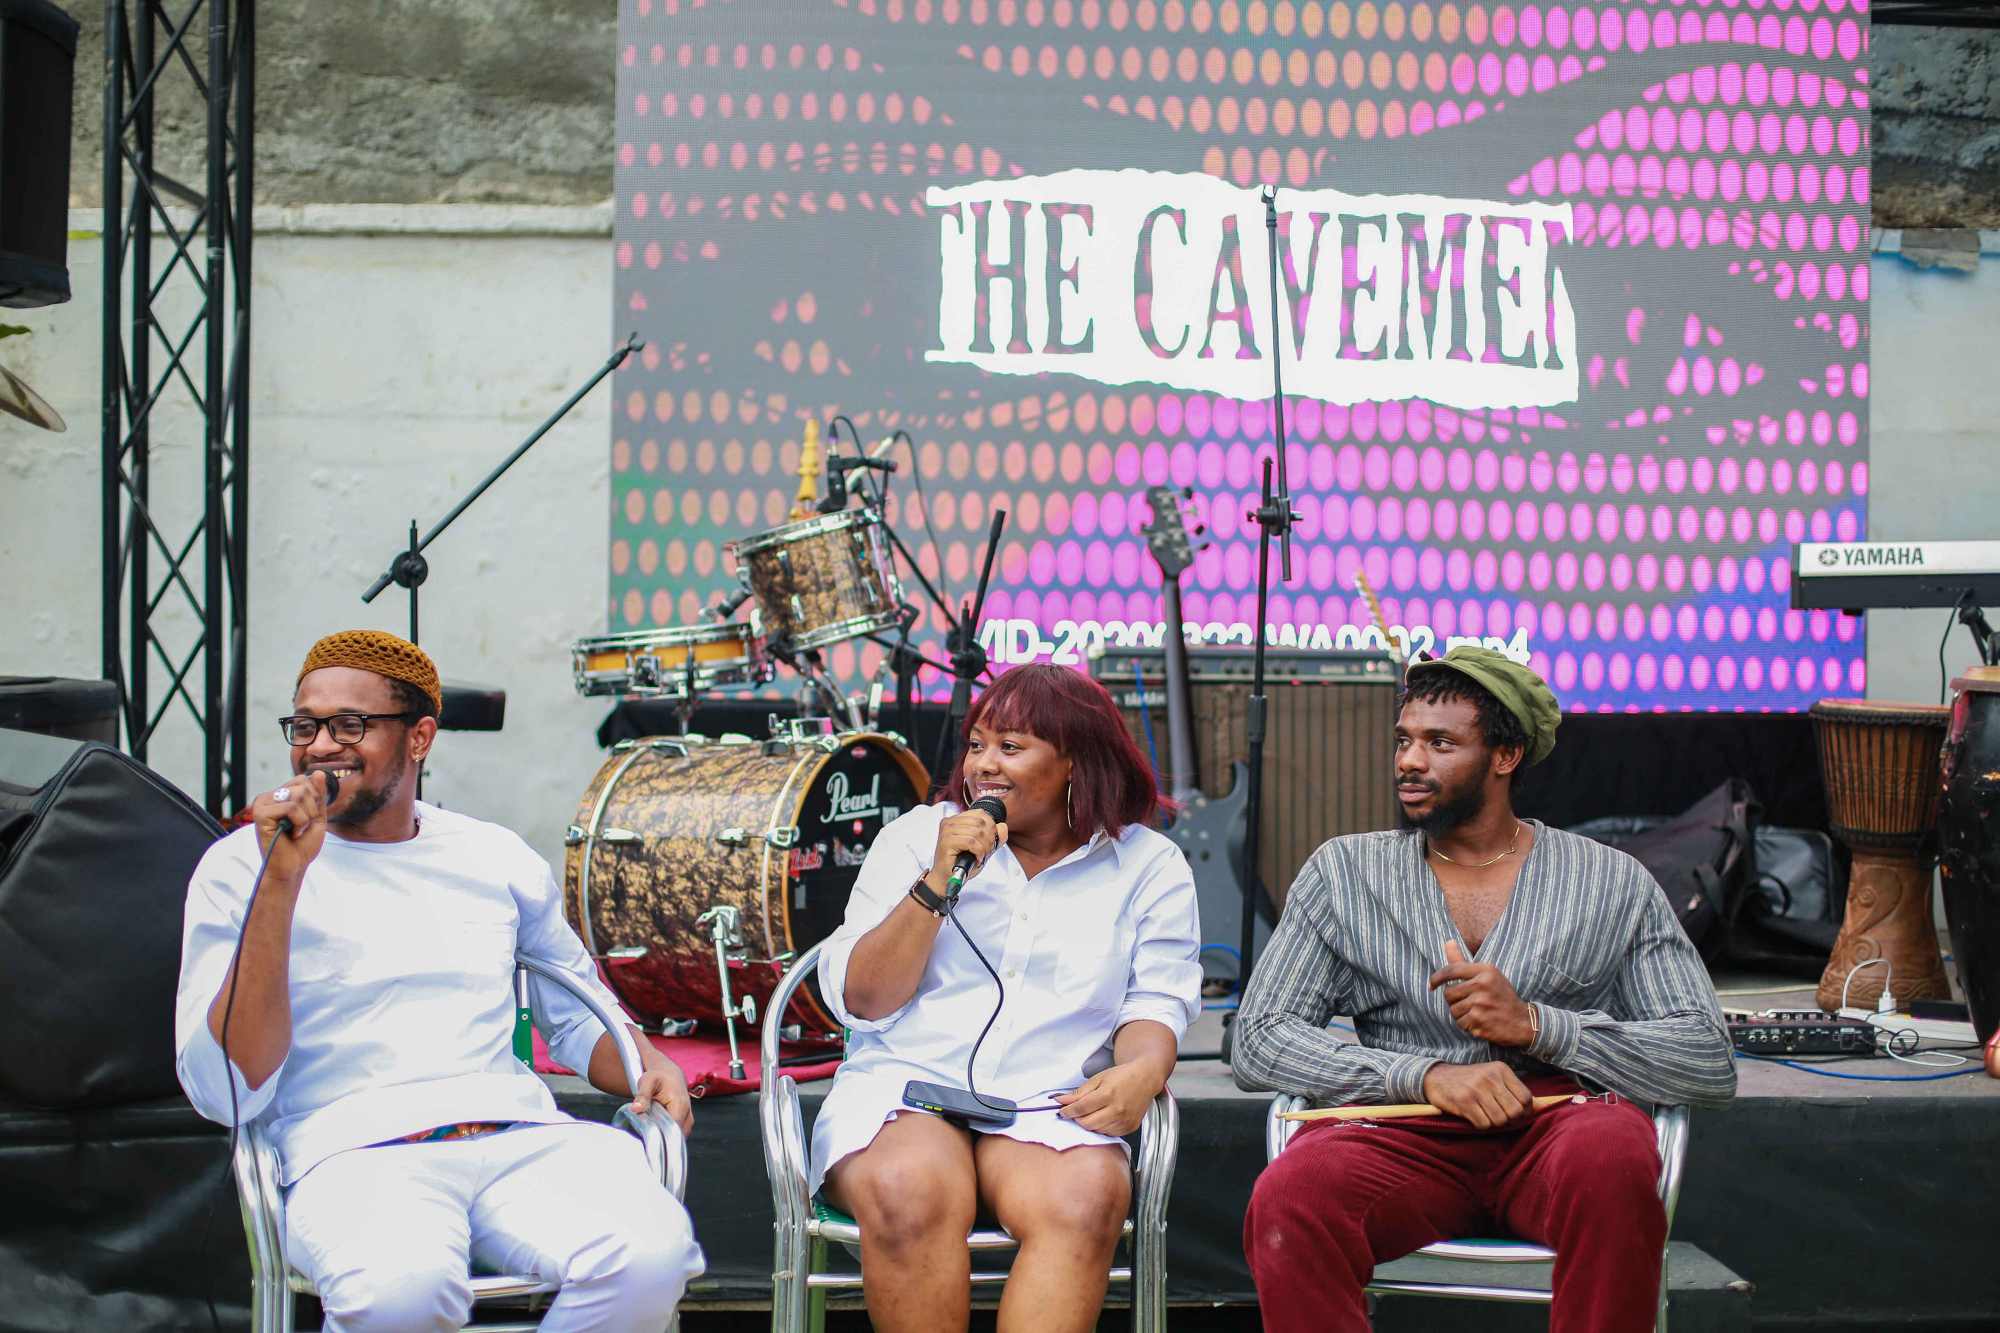 the cavemen album launch